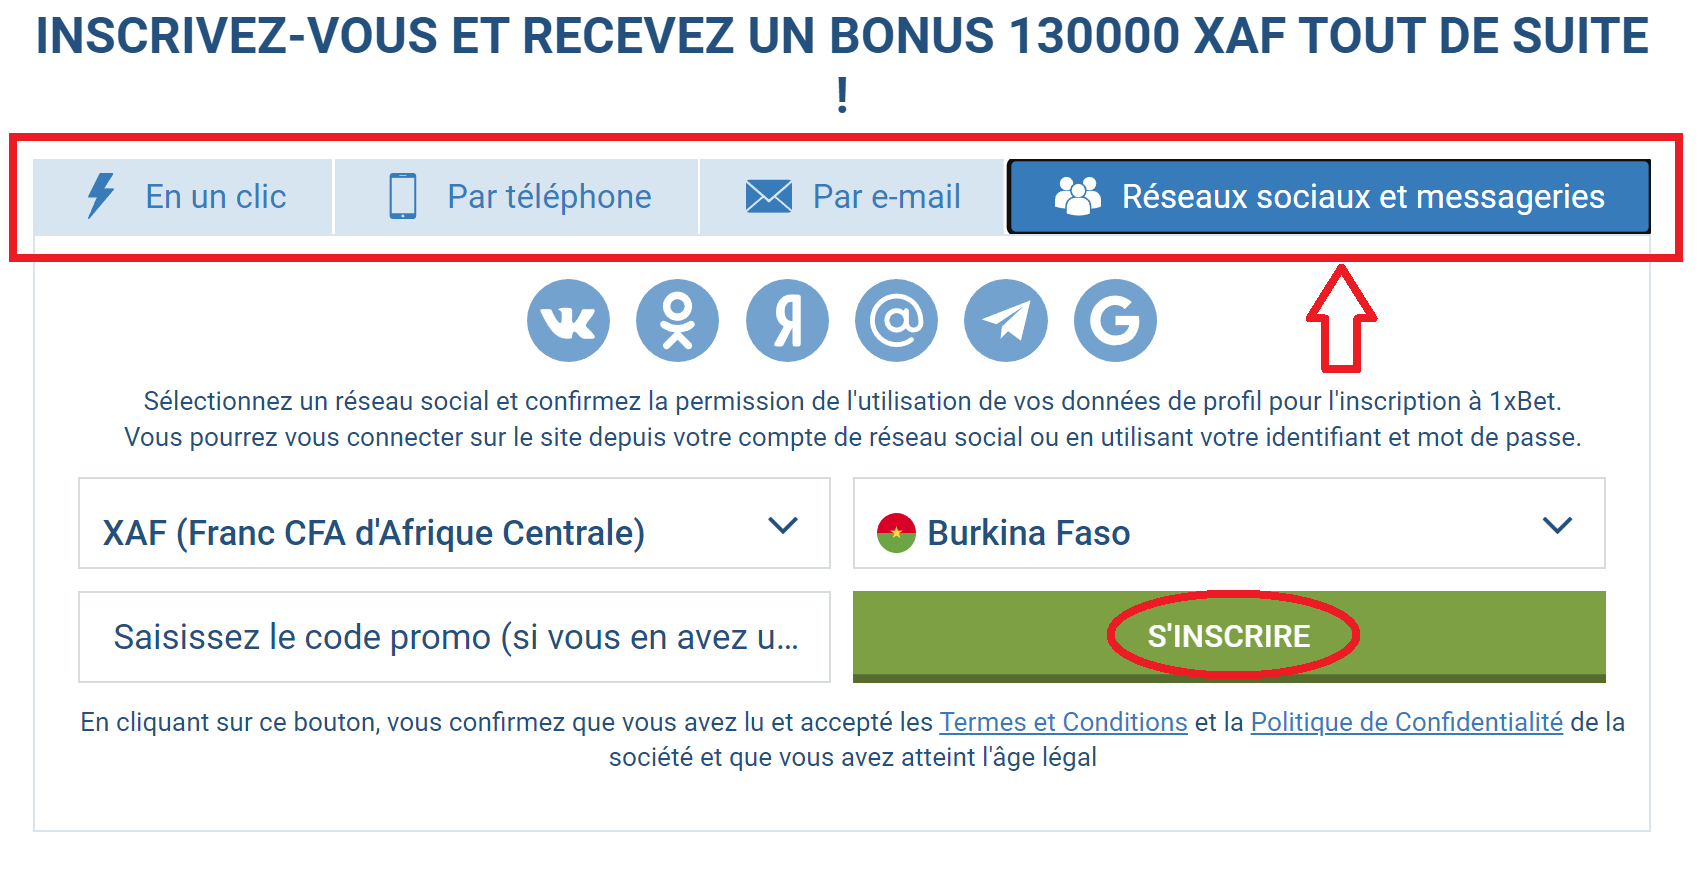 1xBet Inscription via les réseaux sociaux Burkina Faso